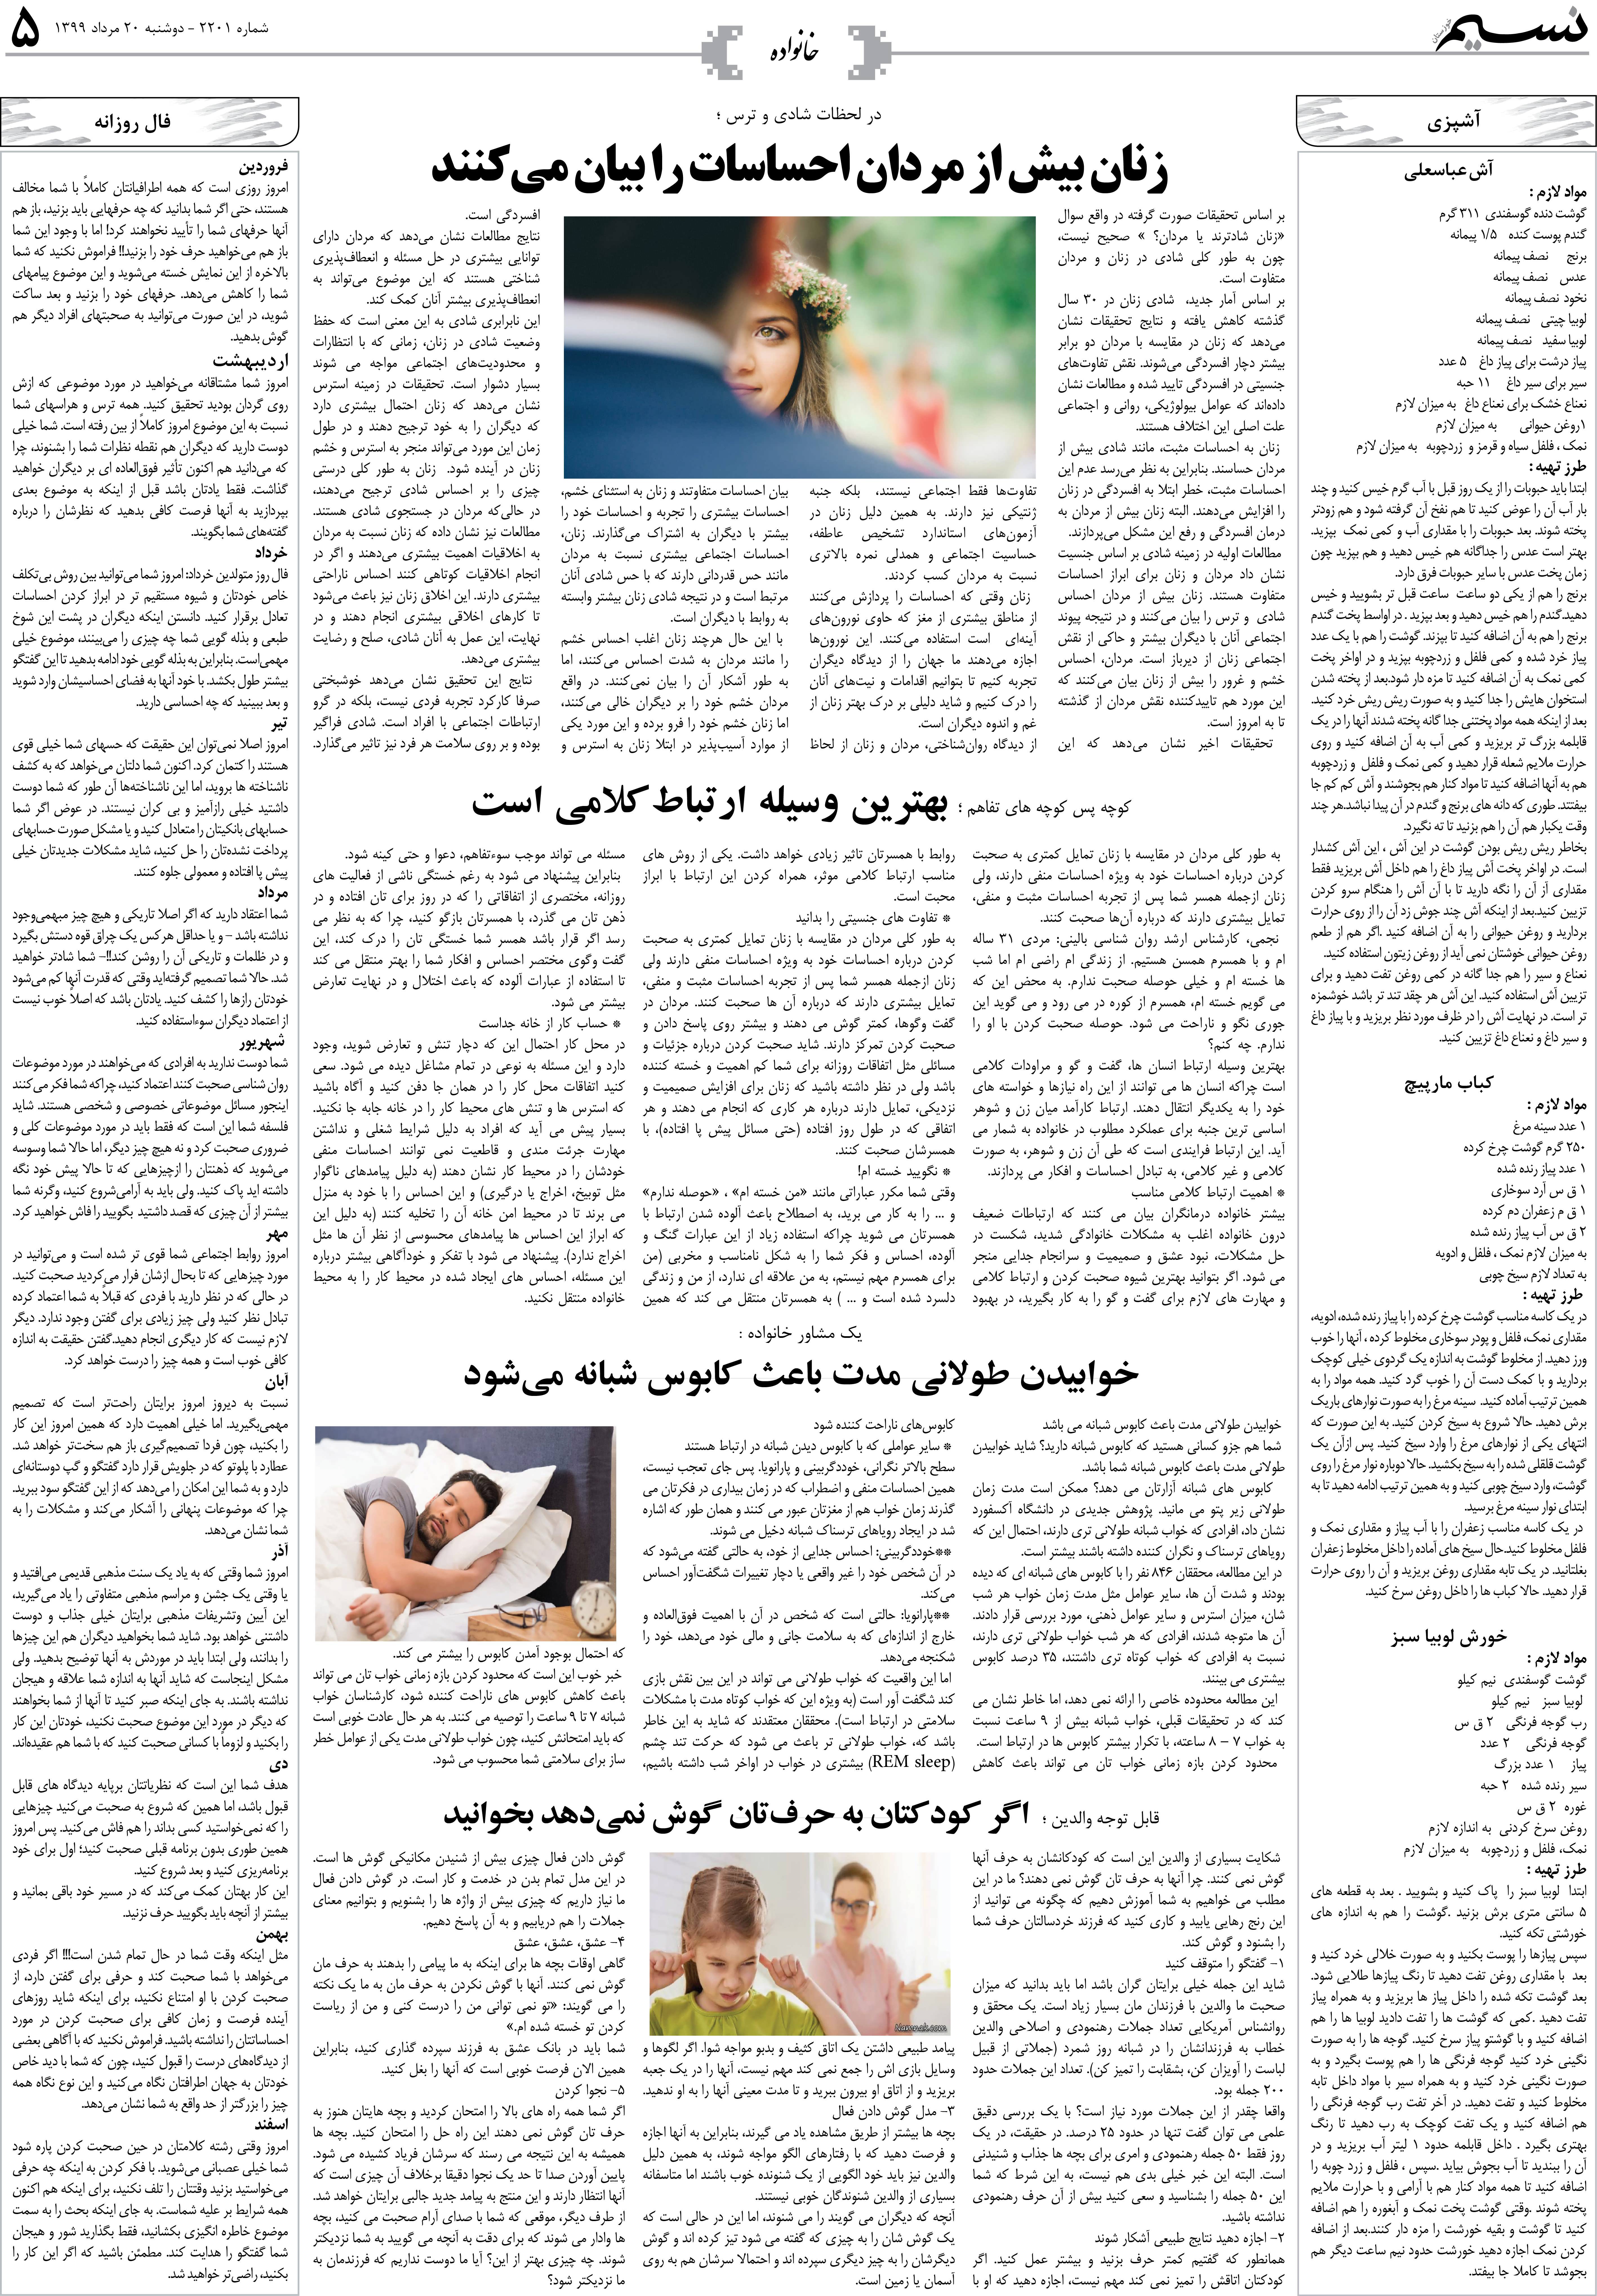 صفحه خانواده روزنامه نسیم شماره 2201